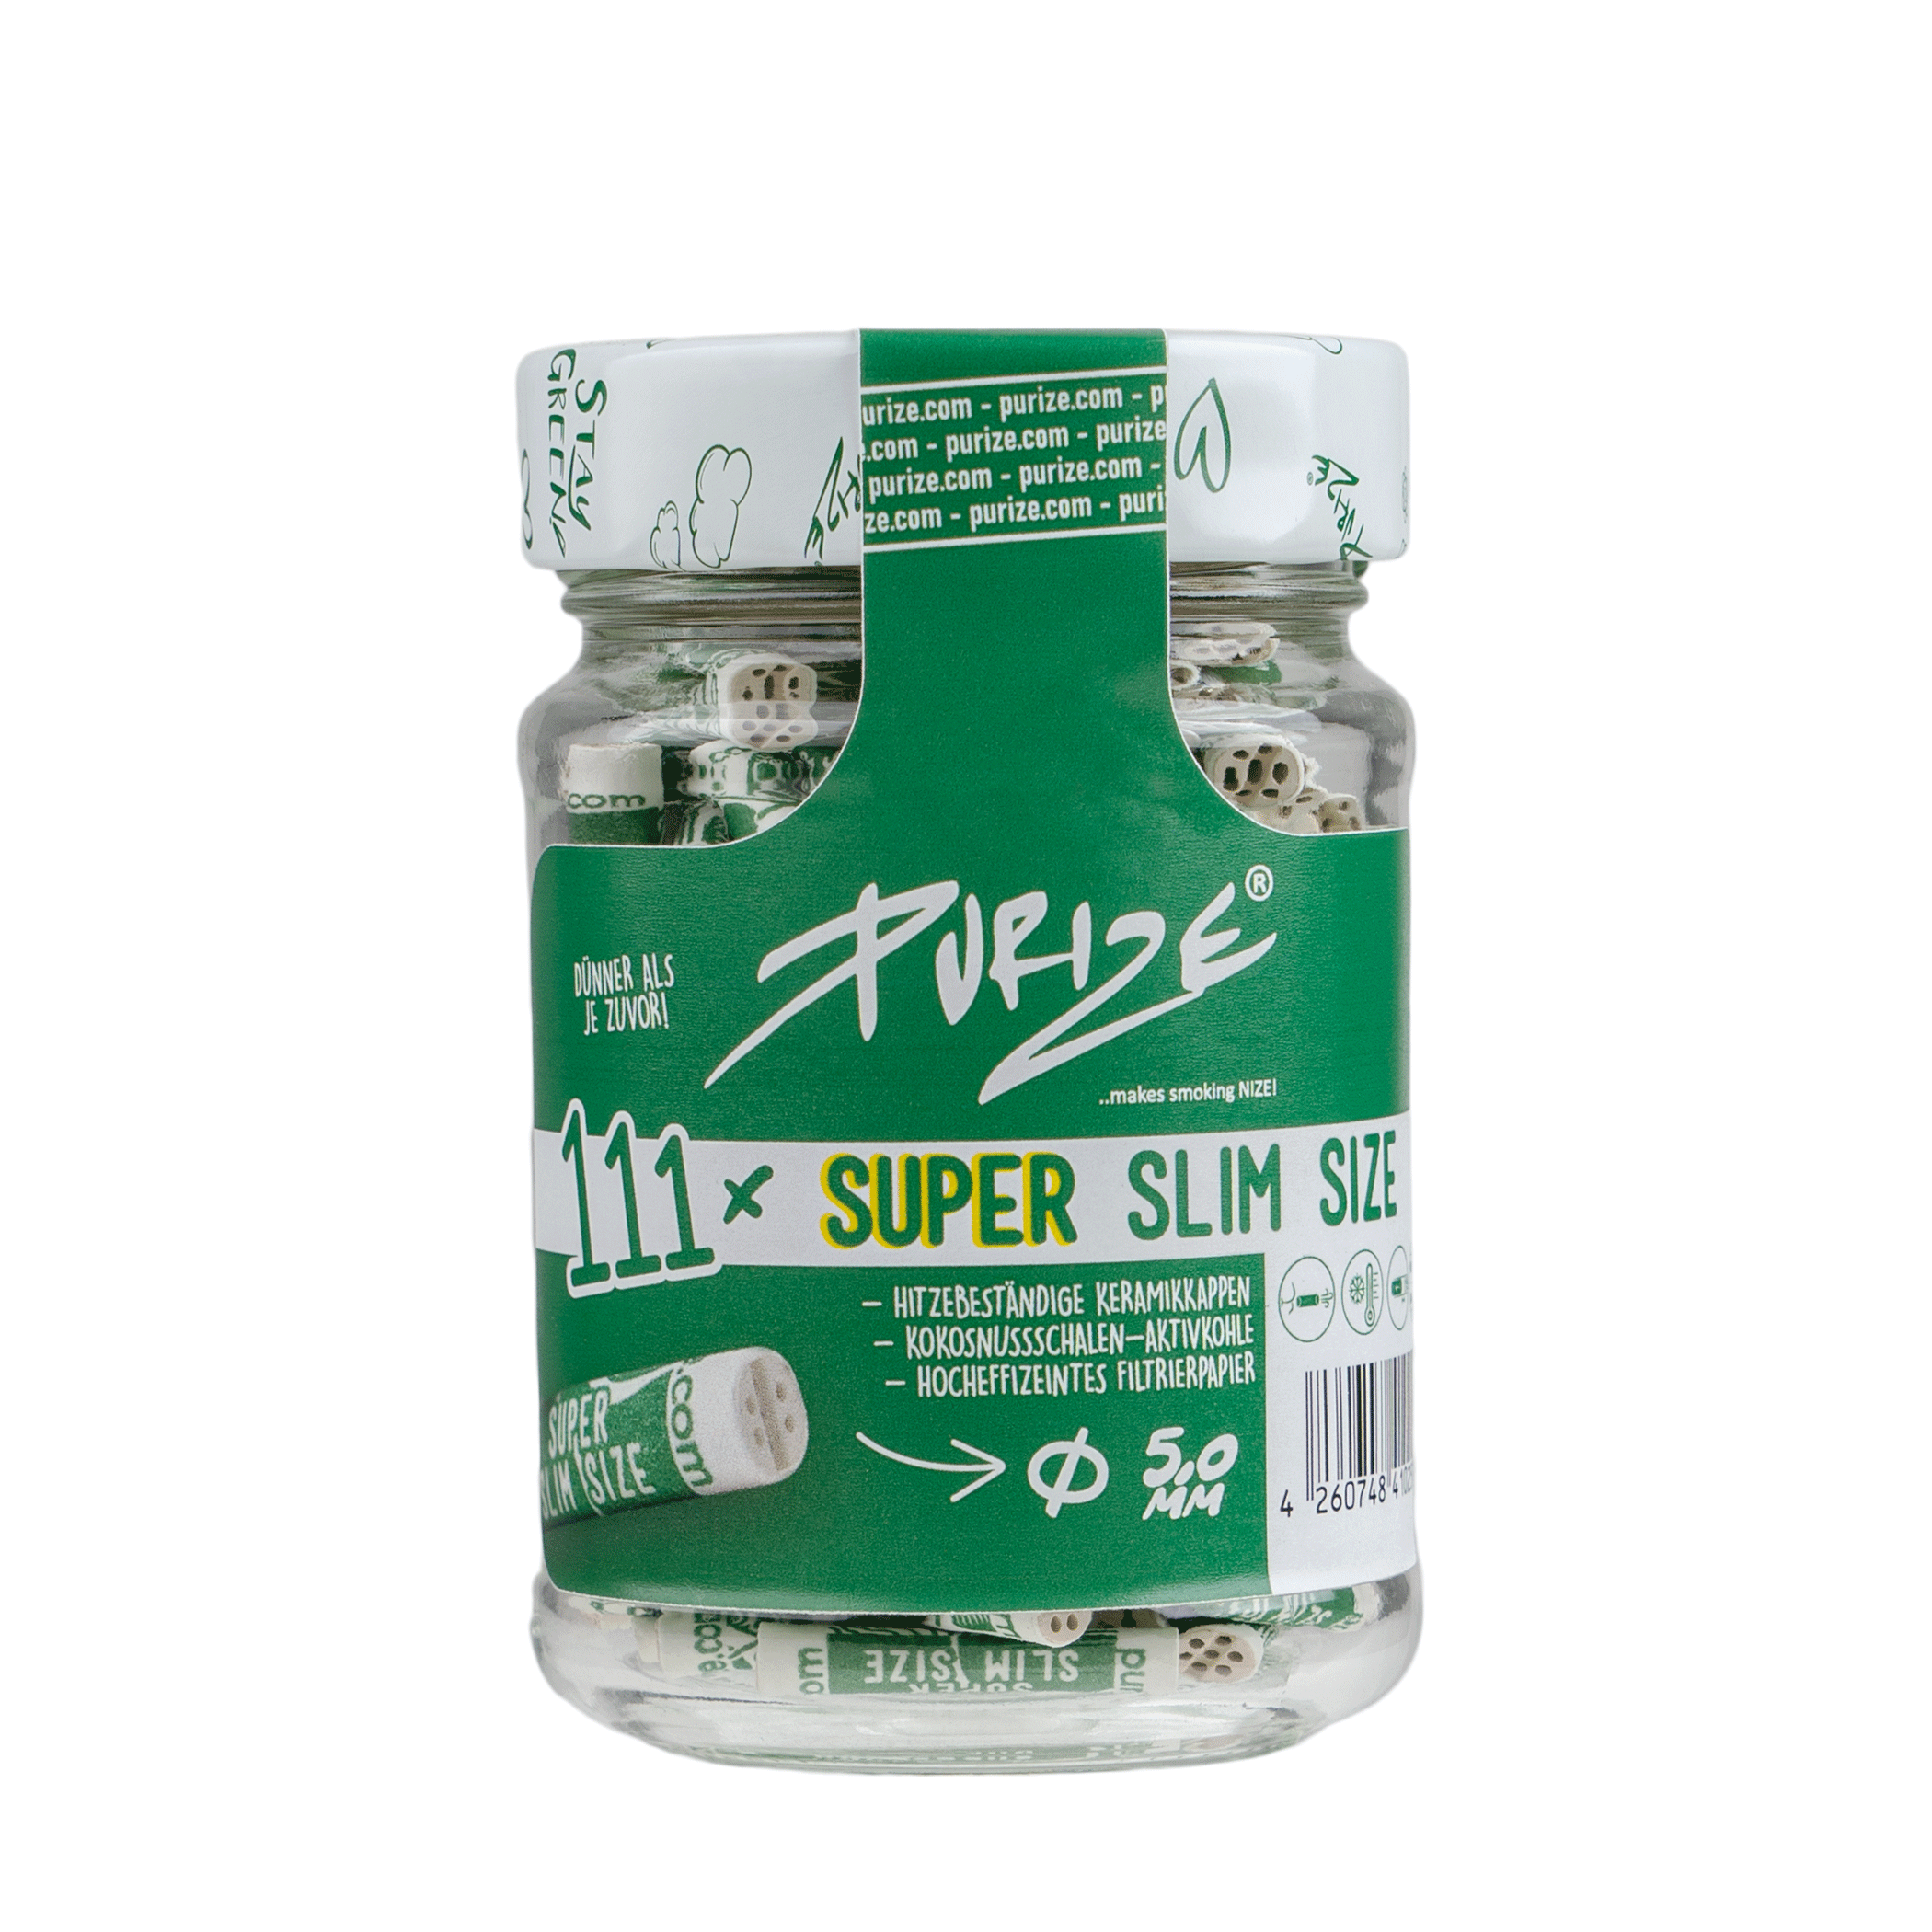 PURIZE Glas | 111 SUPER Slim Size Aktivkohlefilter